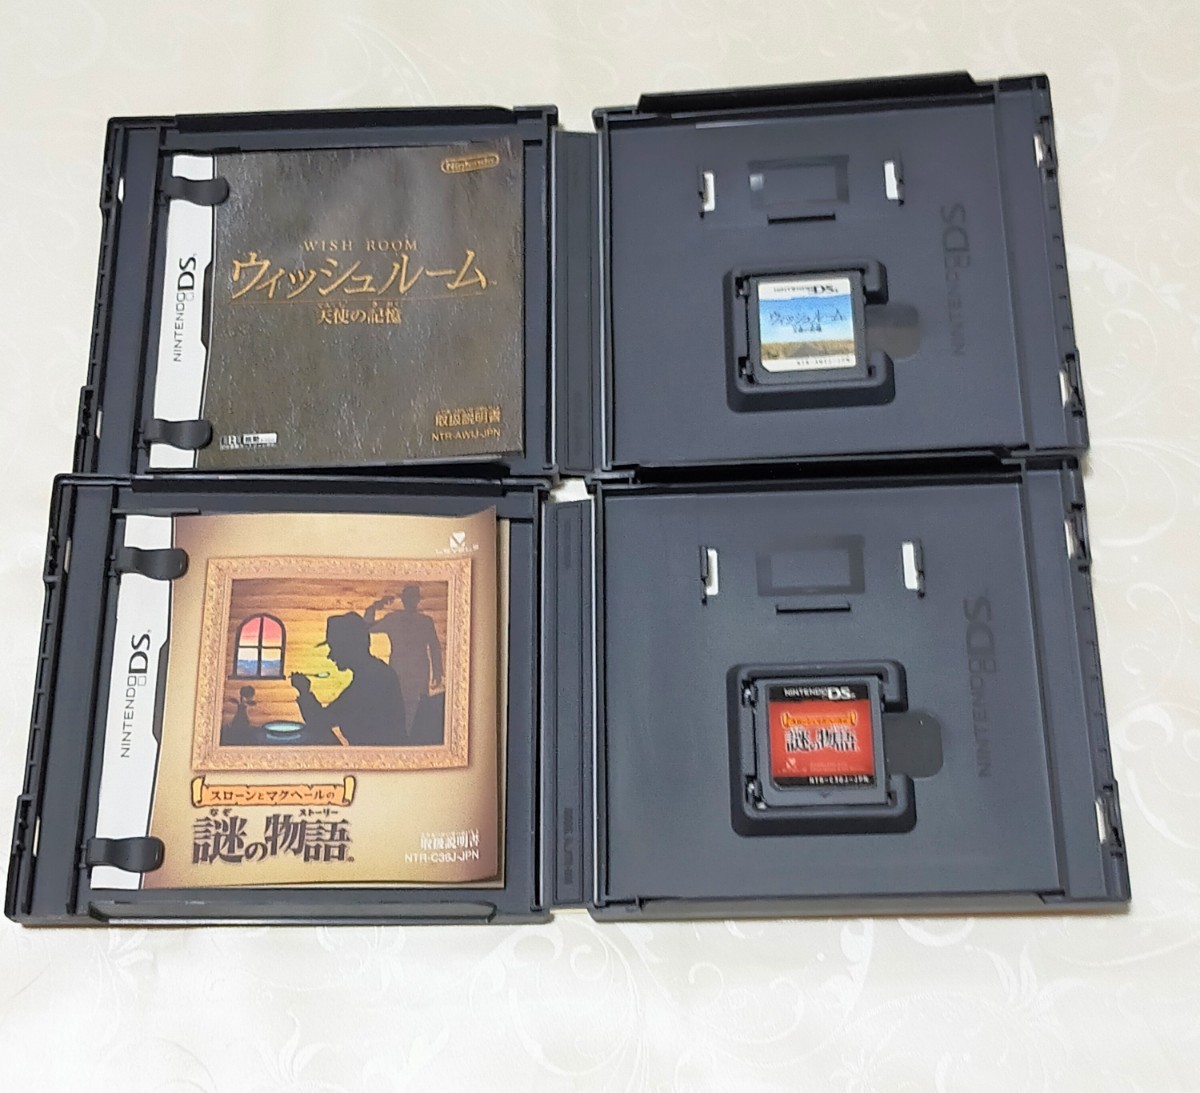 ニンテンドー DS GBA 逆転裁判 シリーズ 4本 ＋スローンとマクヘールの謎の物語 ウィッシュルーム 天使の記憶 2本 6本 セット 動作確認済の画像4